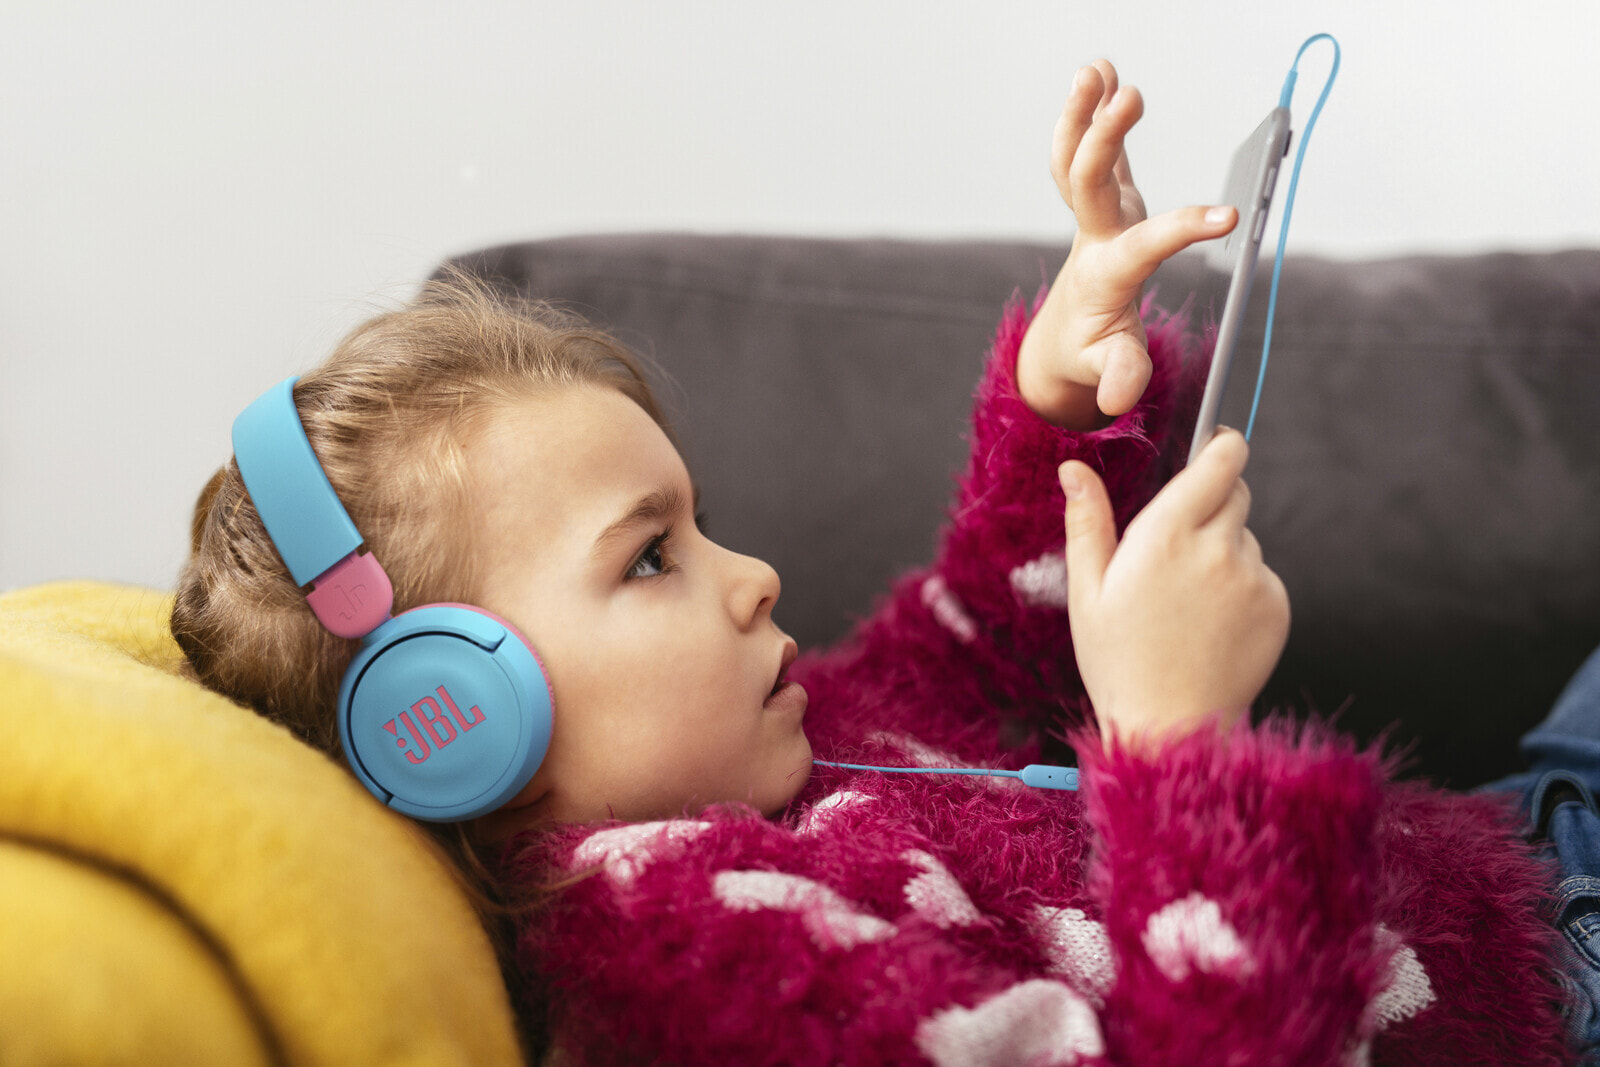 JBL JR 310 Kinder On Ear Kopfhörer Faltbar Lautstärkebegrenzung